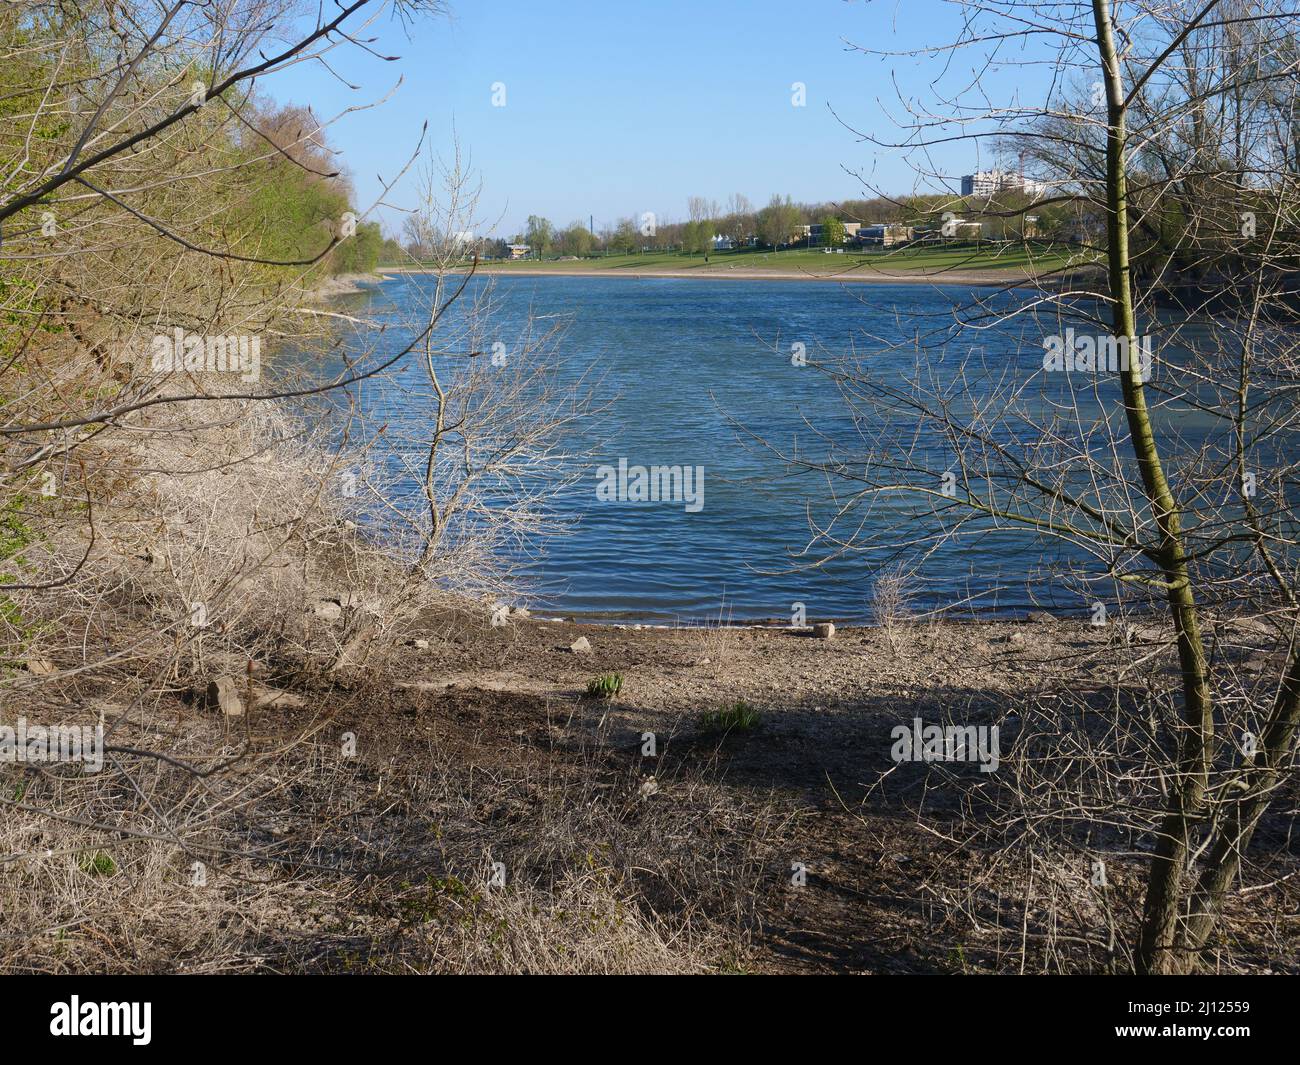 Fischteich umgeben von meist blattlosen Bäumen und Sträuchern. Auf dem gegenüberliegenden Ufer Wiesen und lose Wohngebäude. Düsseldorf nahe dem Rhein Stockfoto